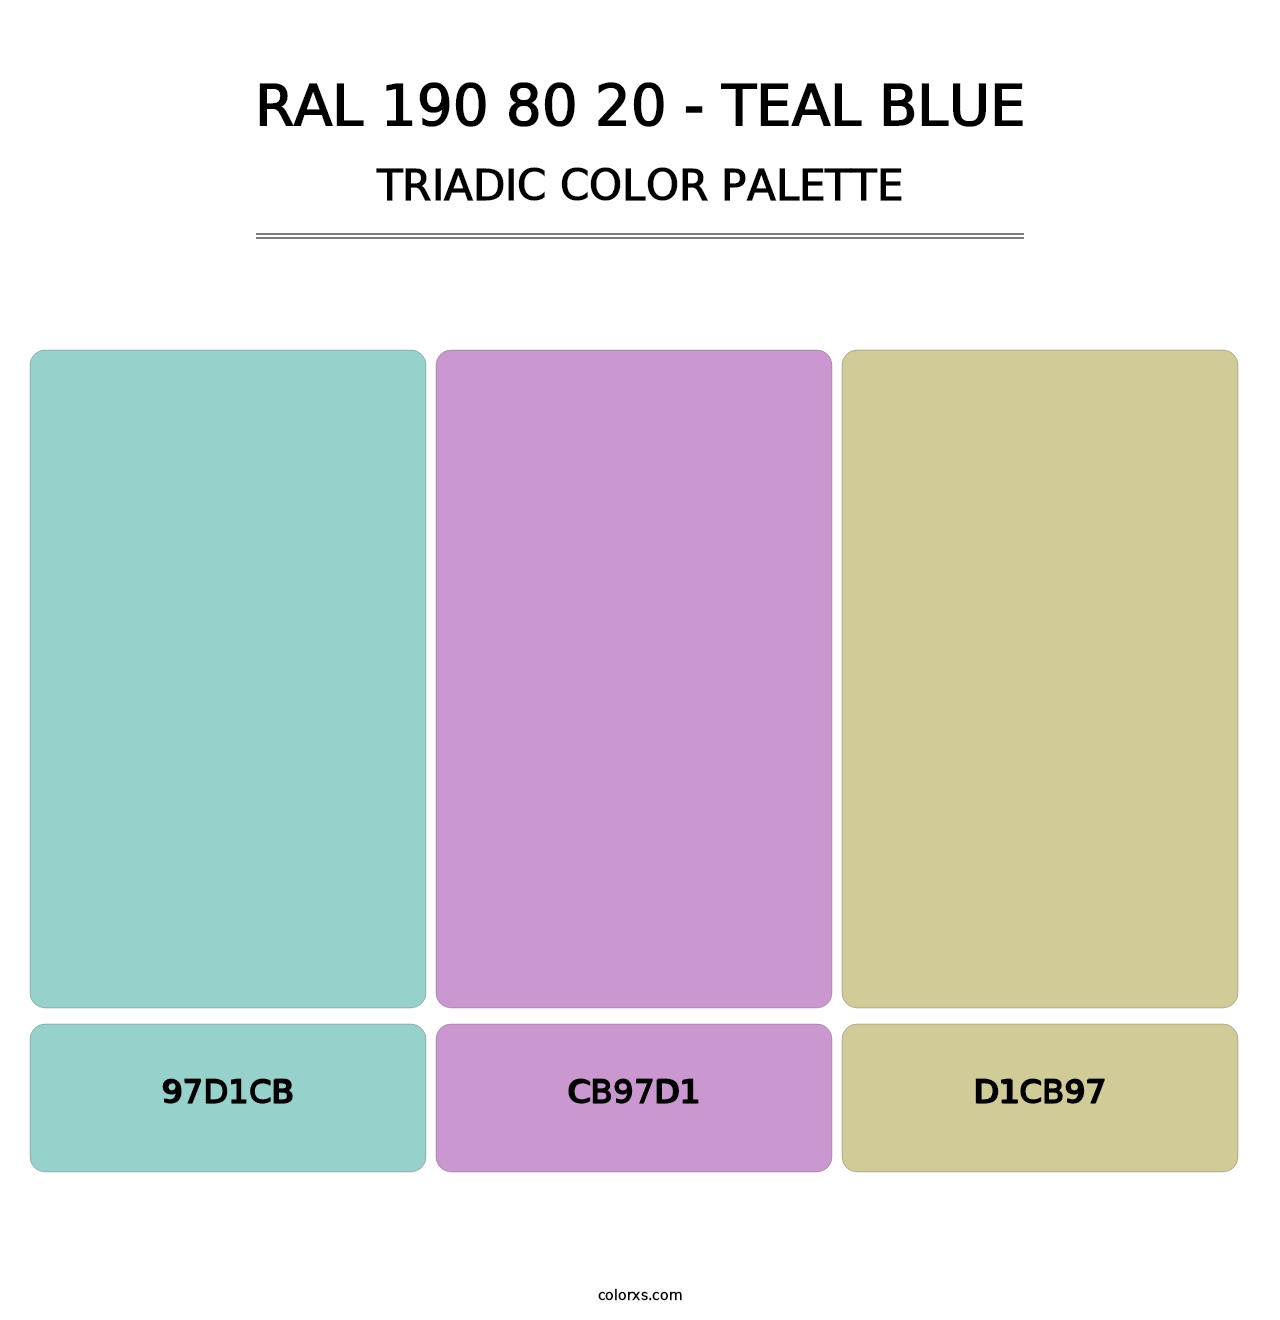 RAL 190 80 20 - Teal Blue - Triadic Color Palette